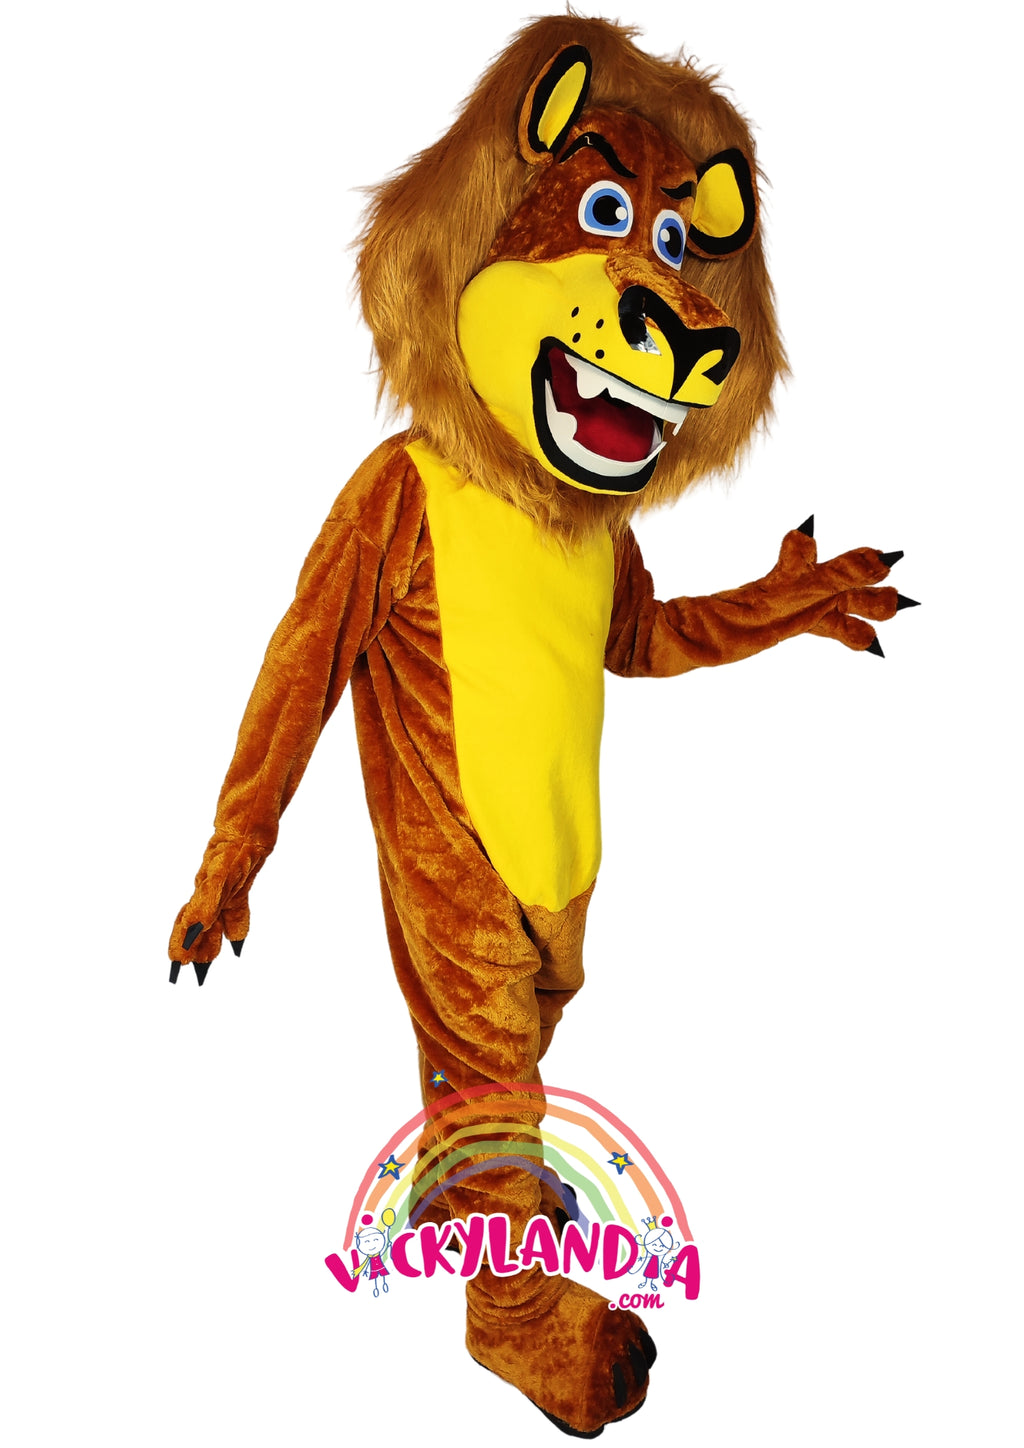 Descubre la magia de nuestro muñeco publicitario de León del Zoo en Vickylandia. Son disfraces cabezones perfectos para fiestas infantiles, shows, cumpleaños, estrategias publicitarias, carnavales, fiestas patronales, espectáculos, cabalgatas y cualquier tipo de evento